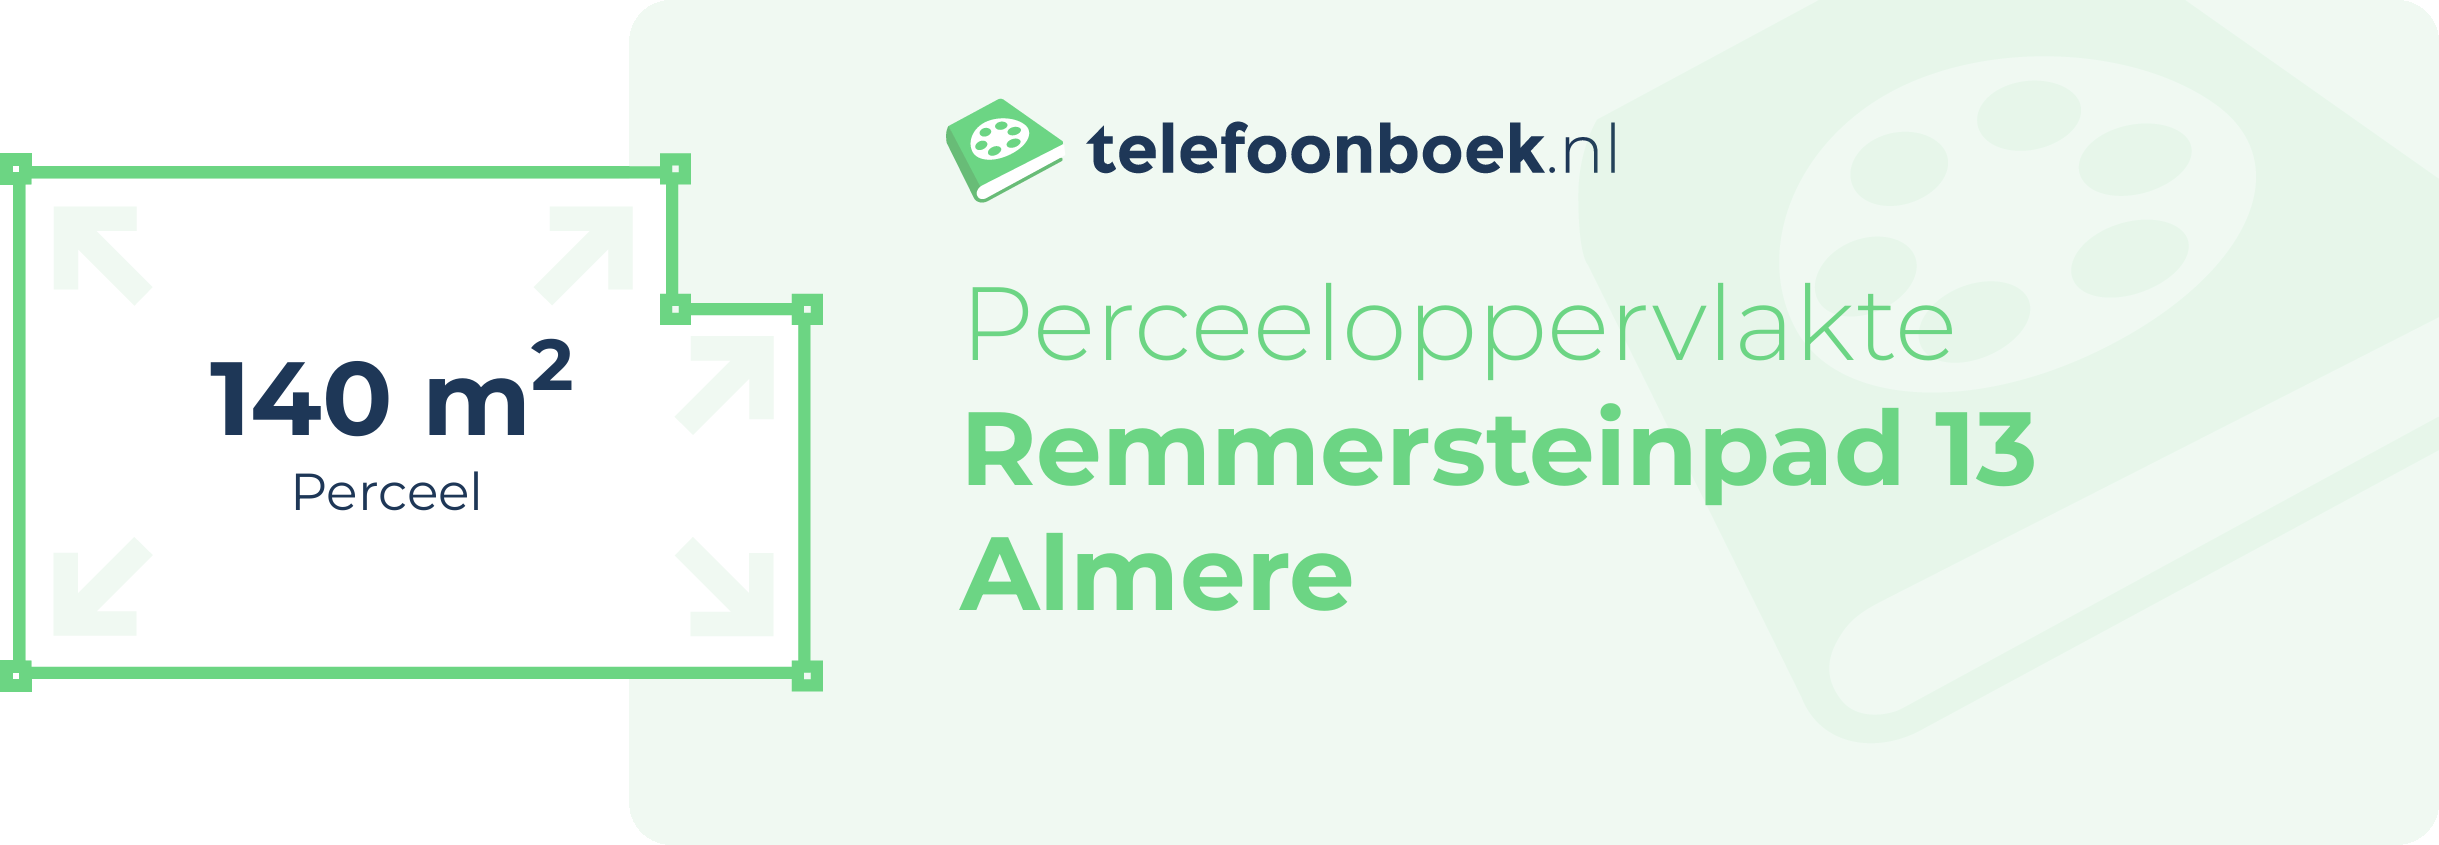 Perceeloppervlakte Remmersteinpad 13 Almere